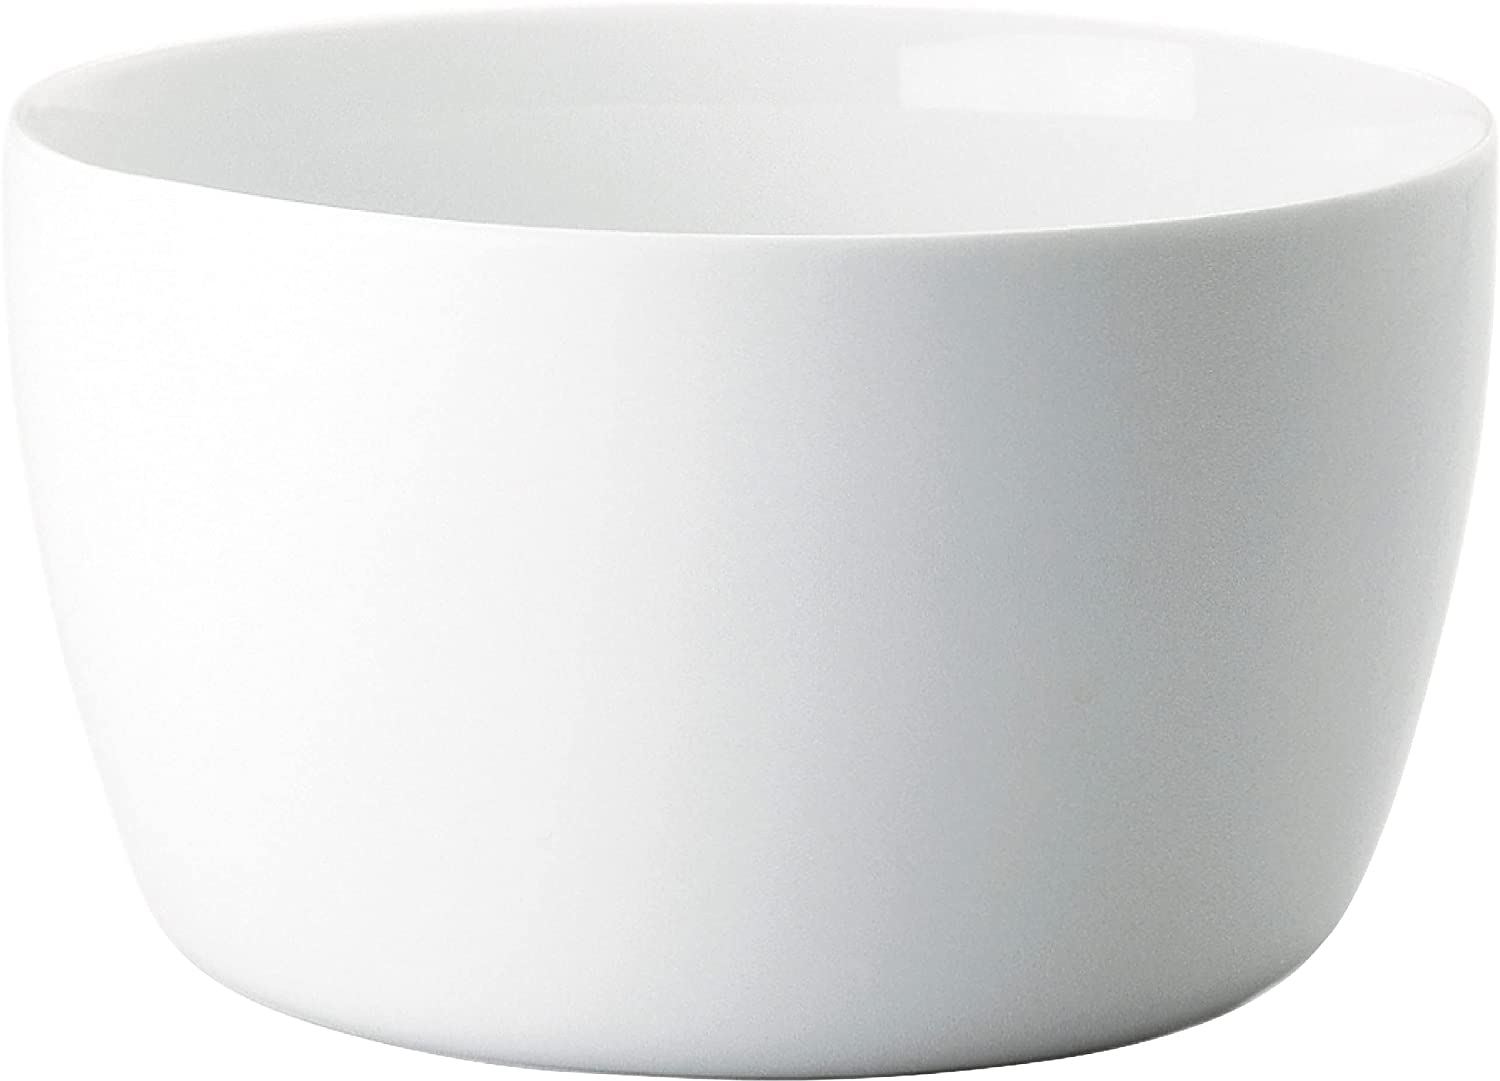 KAHLA Five Senses Medium Bowl 7-1/2 Inches, White Color, 1 Piece